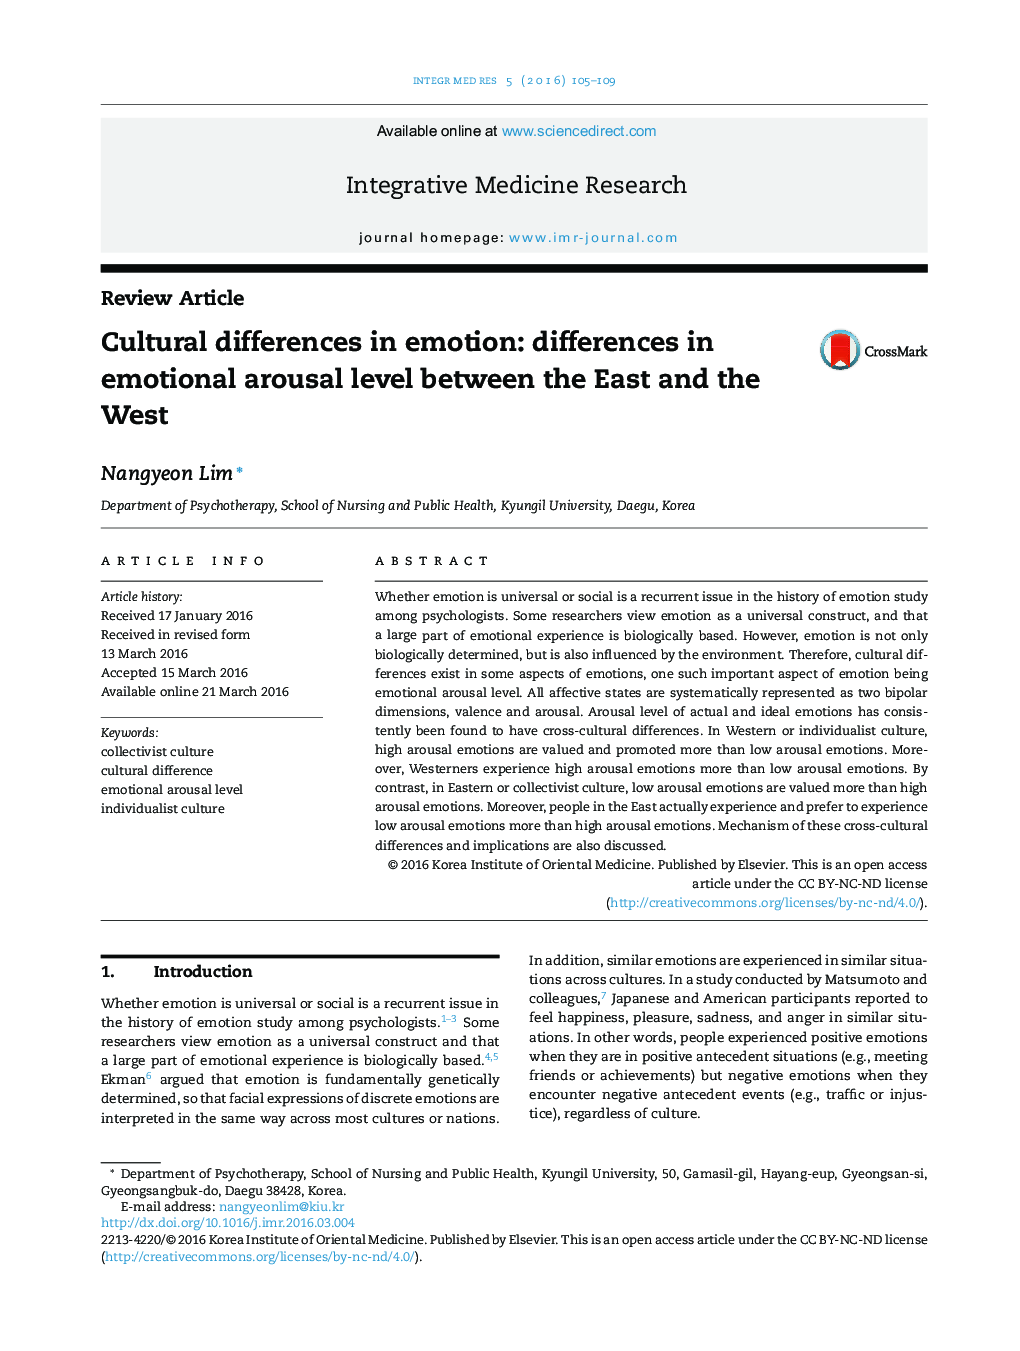 تفاوت های فرهنگی در احساسات: تفاوت در میزان برانگیختگی احساسی بین شرق و غرب